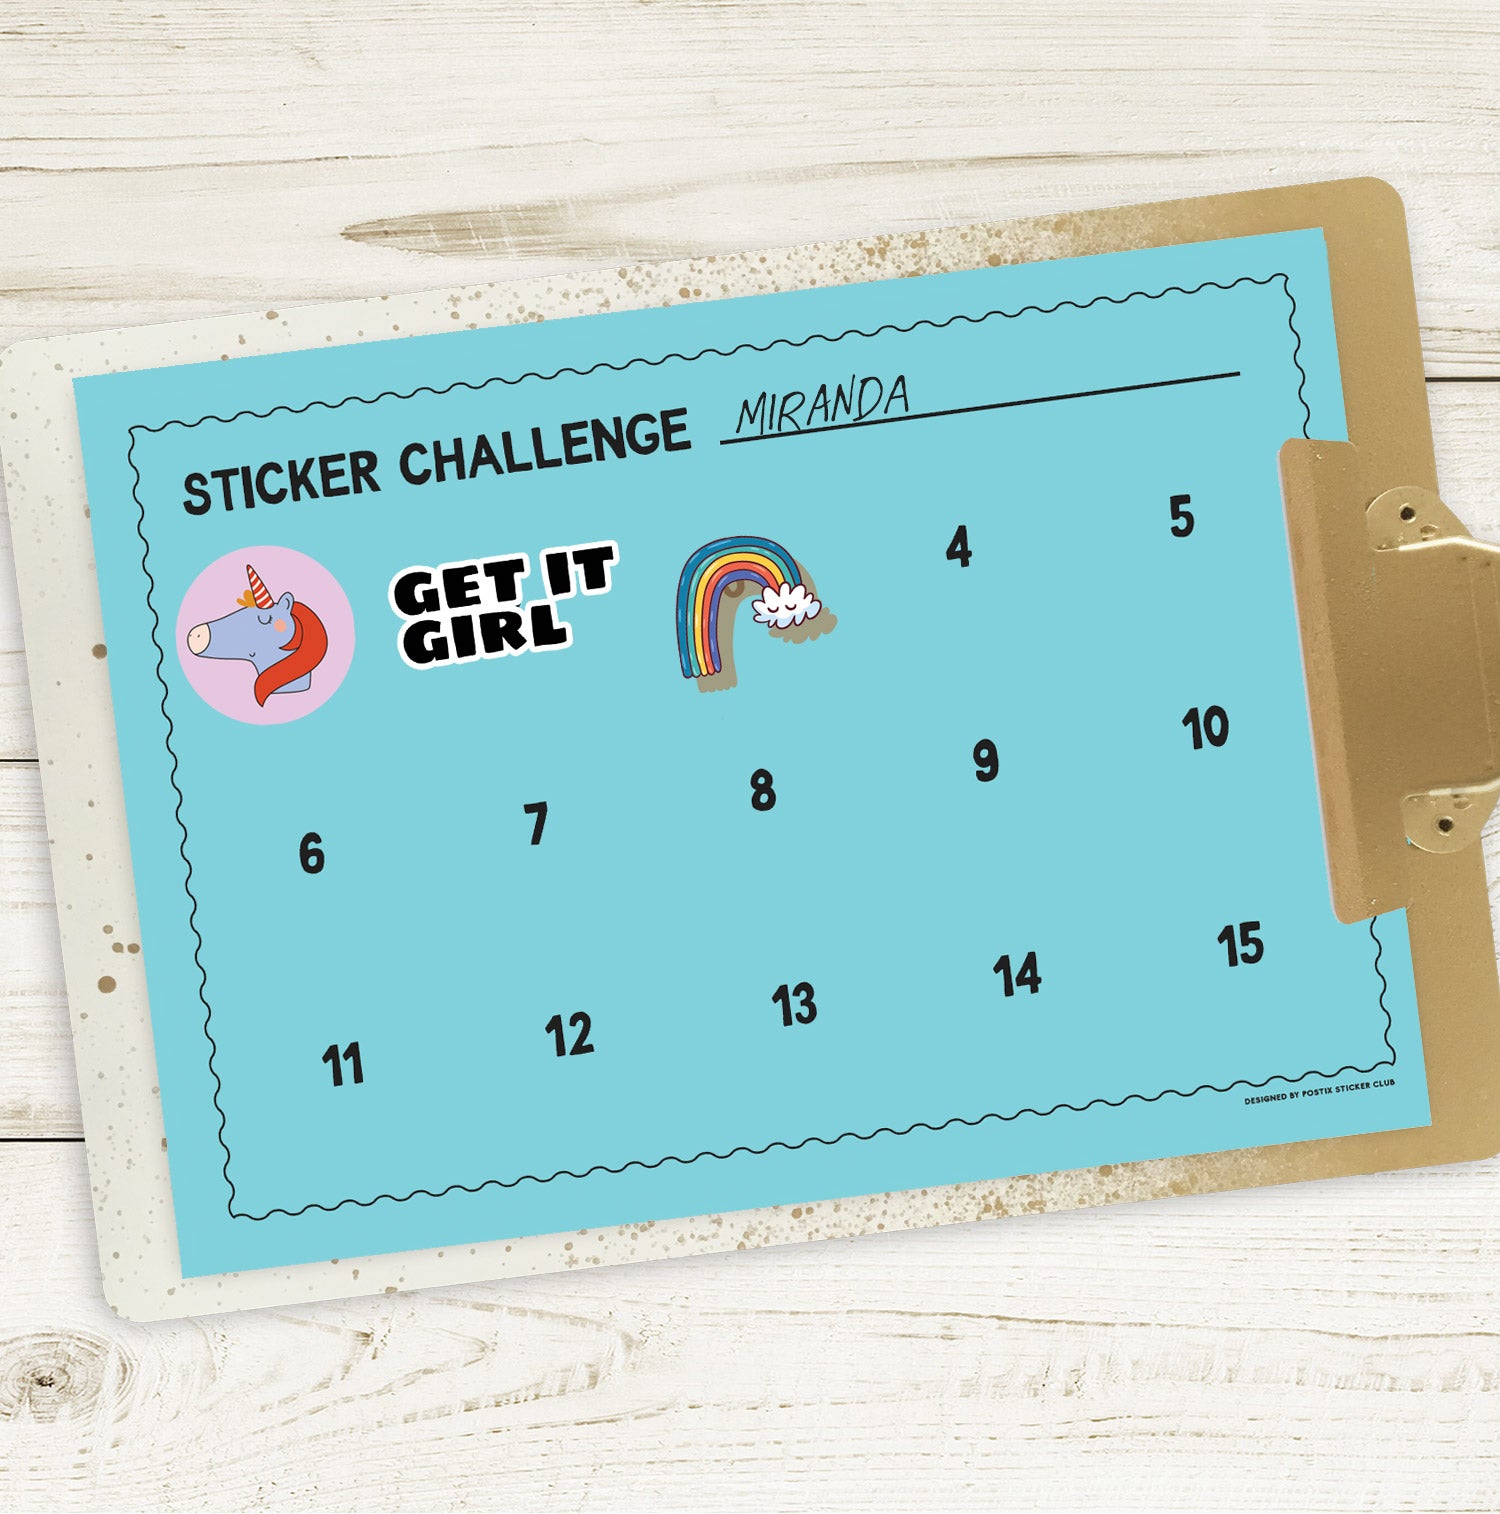 Teachers Sticker Challenge Sheet PDF Download